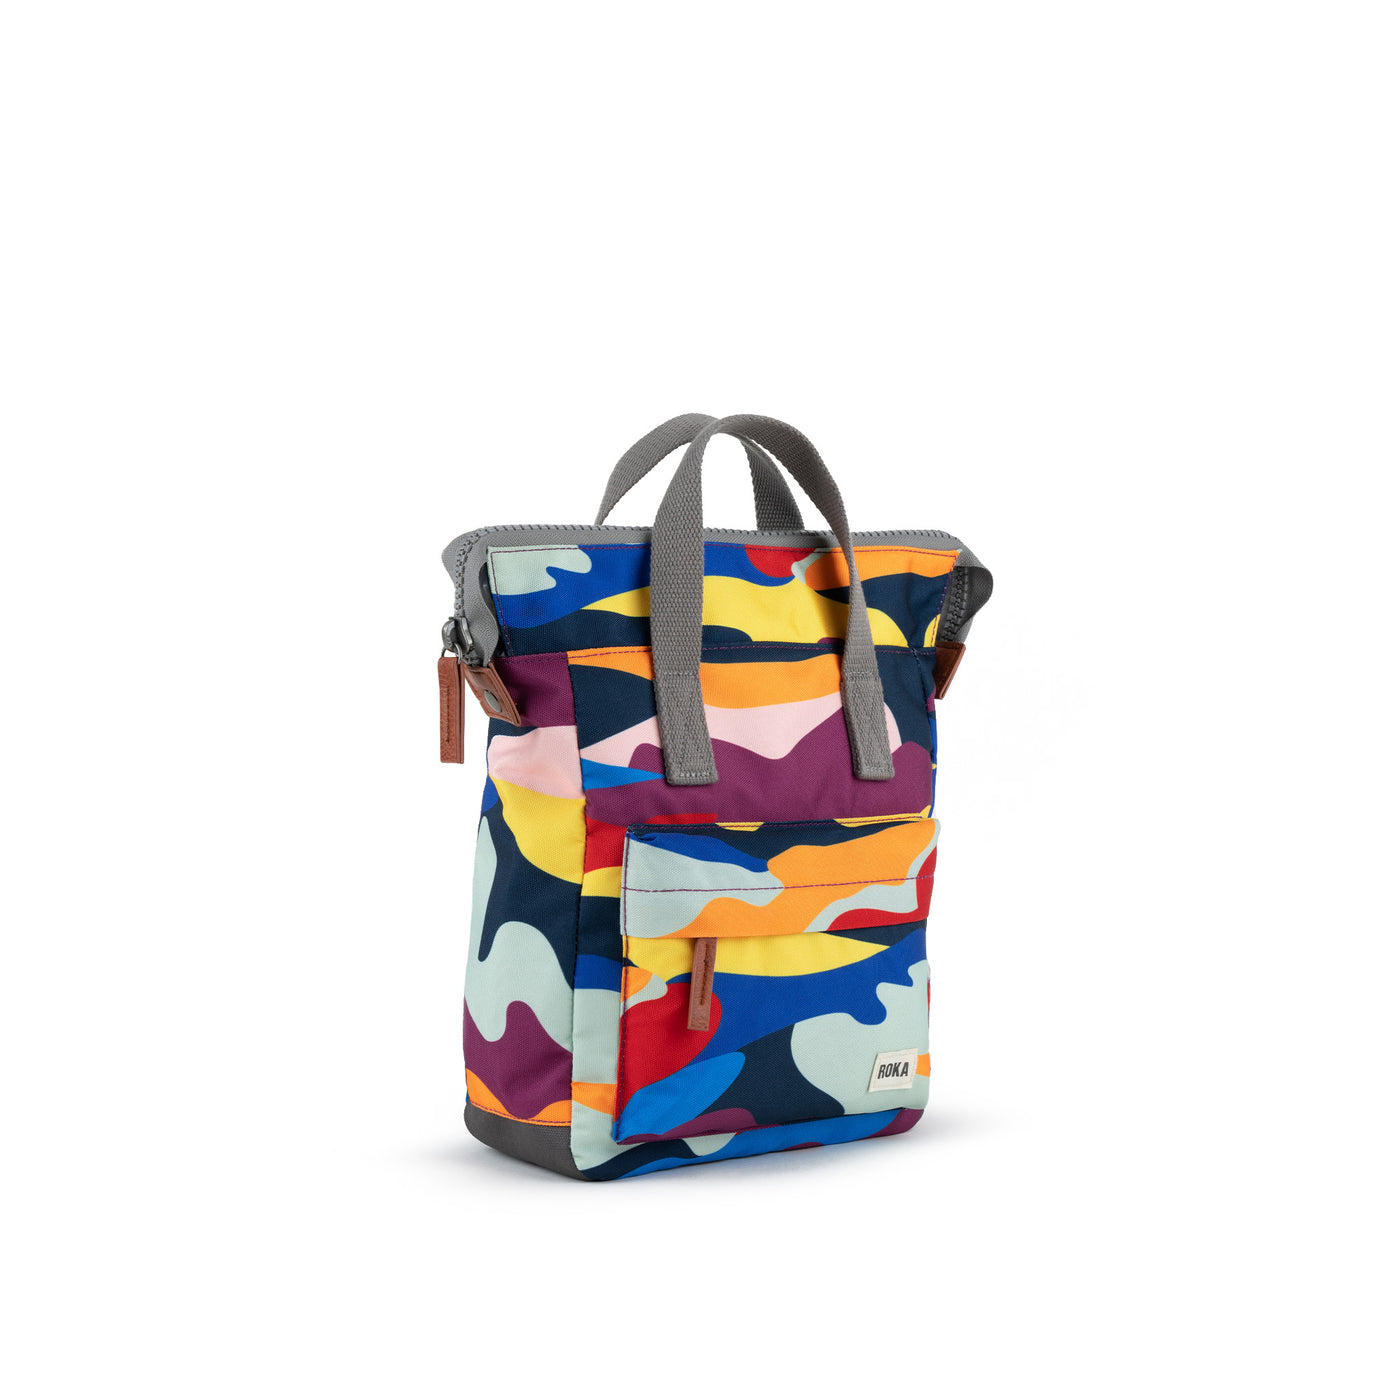 Roka | Sustainable Backpack | Bold Camo Print – ROKA London